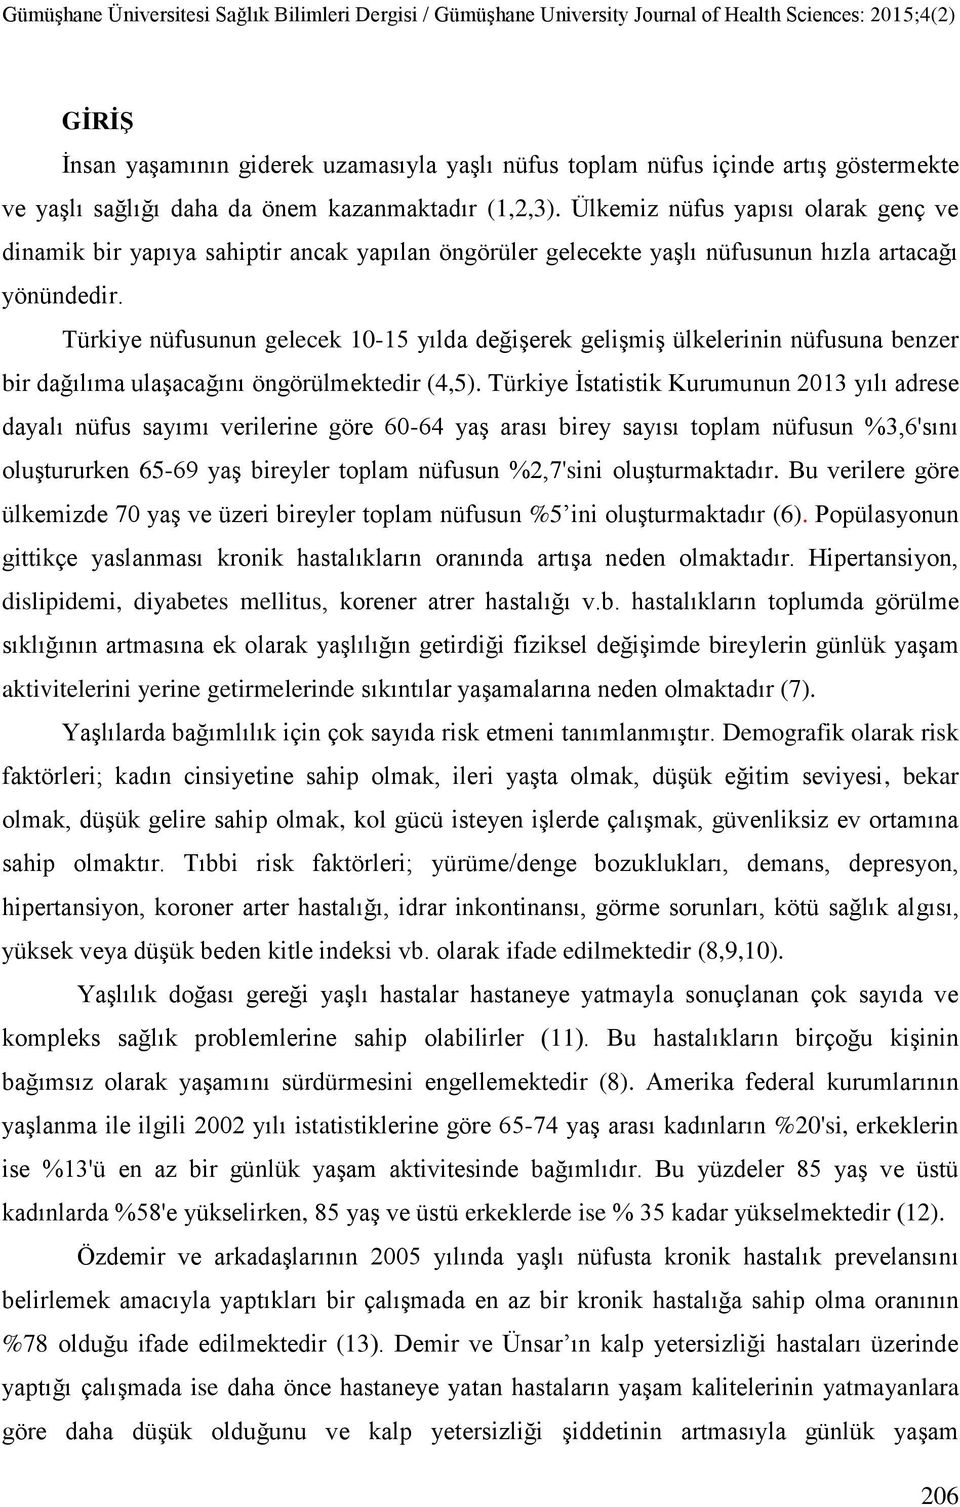 Türkiye nüfusunun gelecek 10-15 yılda değiģerek geliģmiģ ülkelerinin nüfusuna benzer bir dağılıma ulaģacağını öngörülmektedir (4,5).